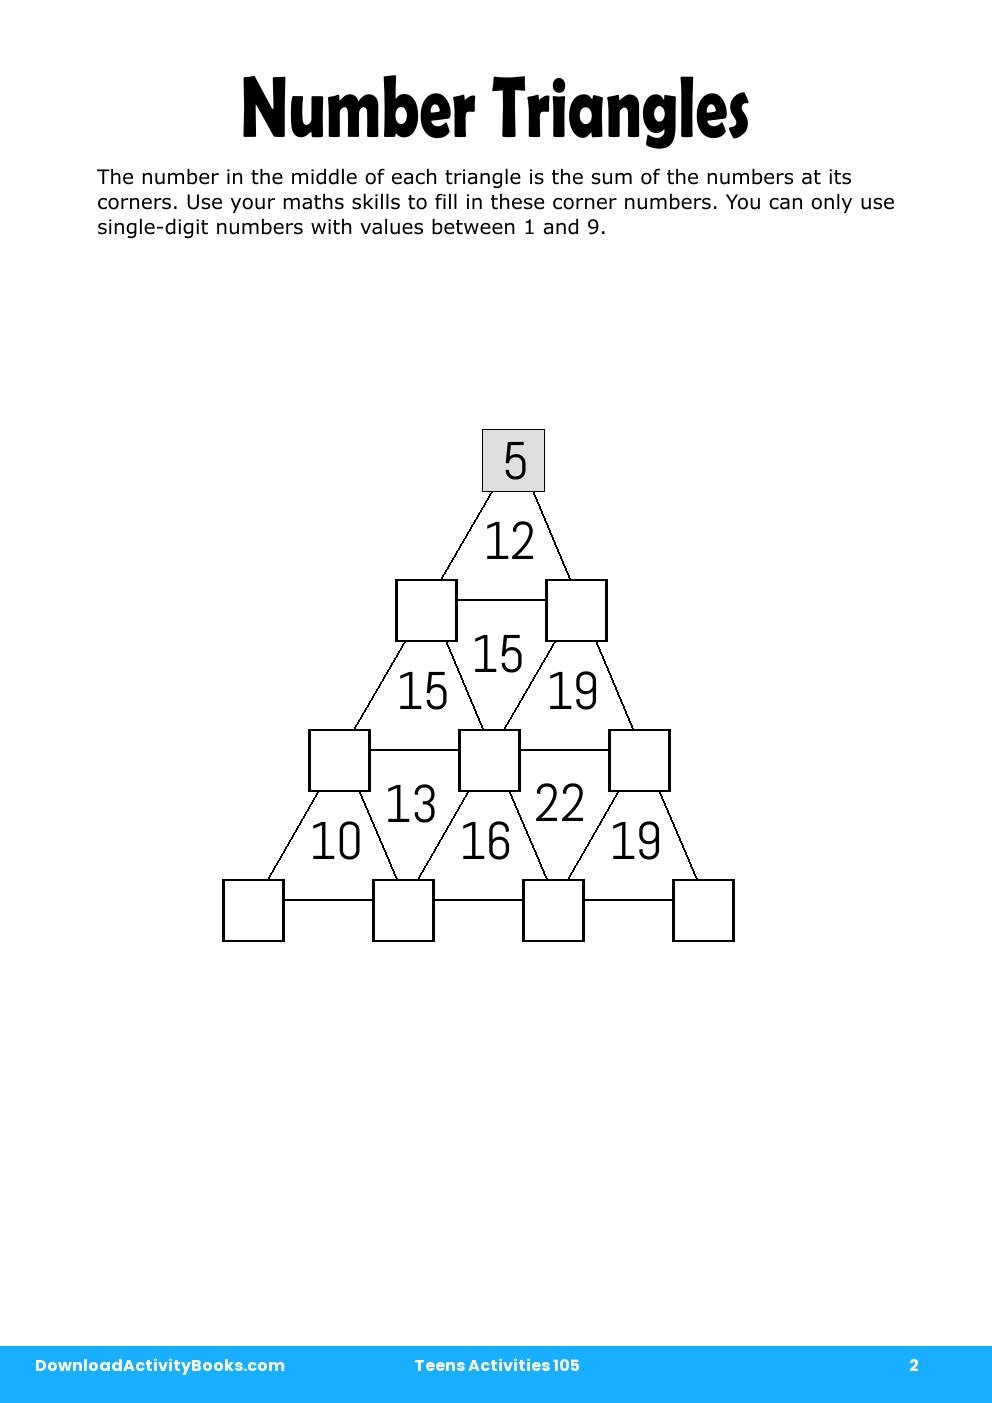 Number Triangles in Teens Activities 105